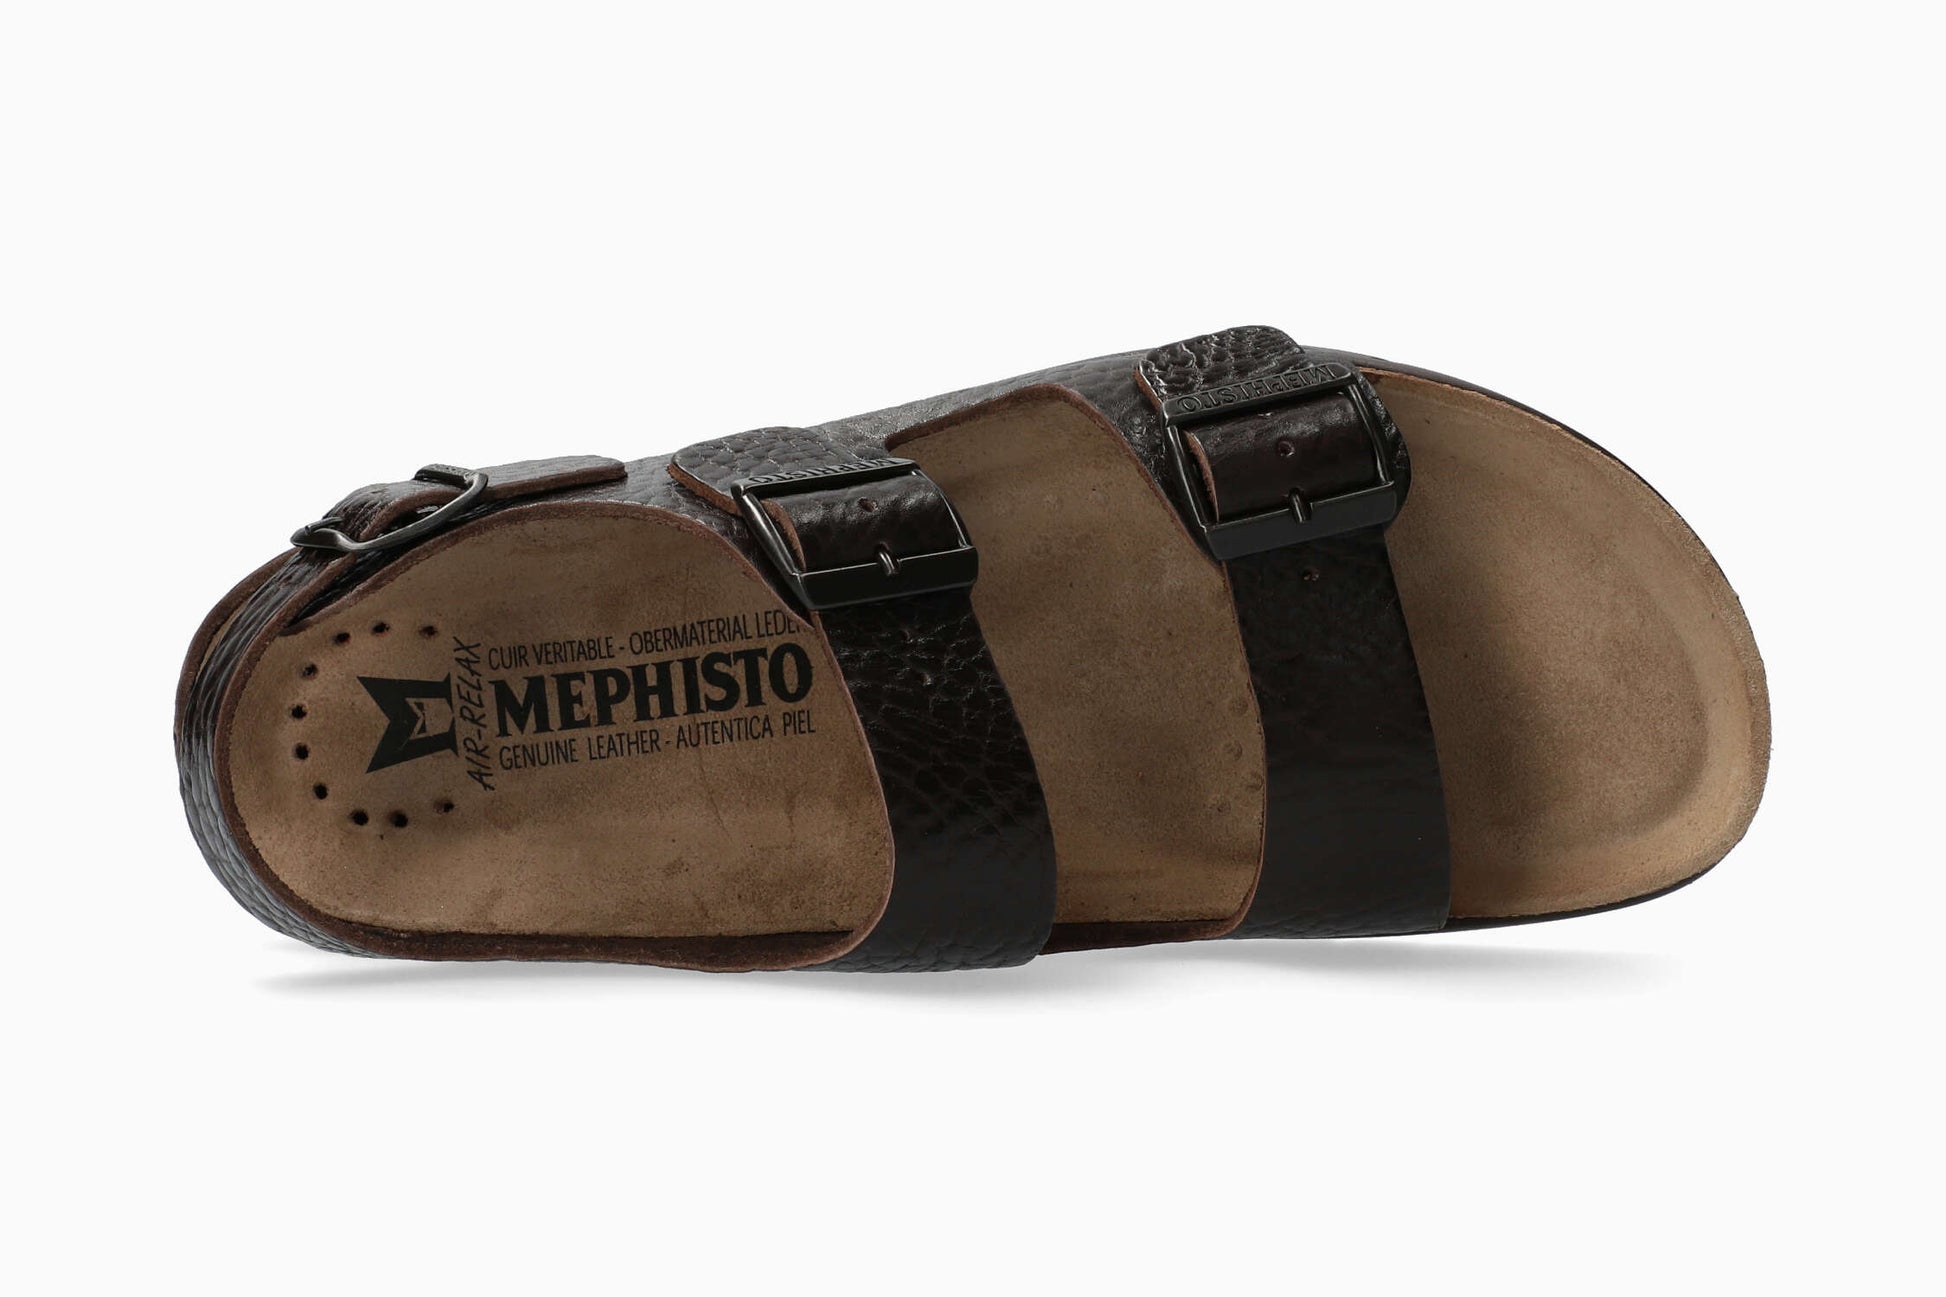 Mephisto Zeus Men's Sandal Top